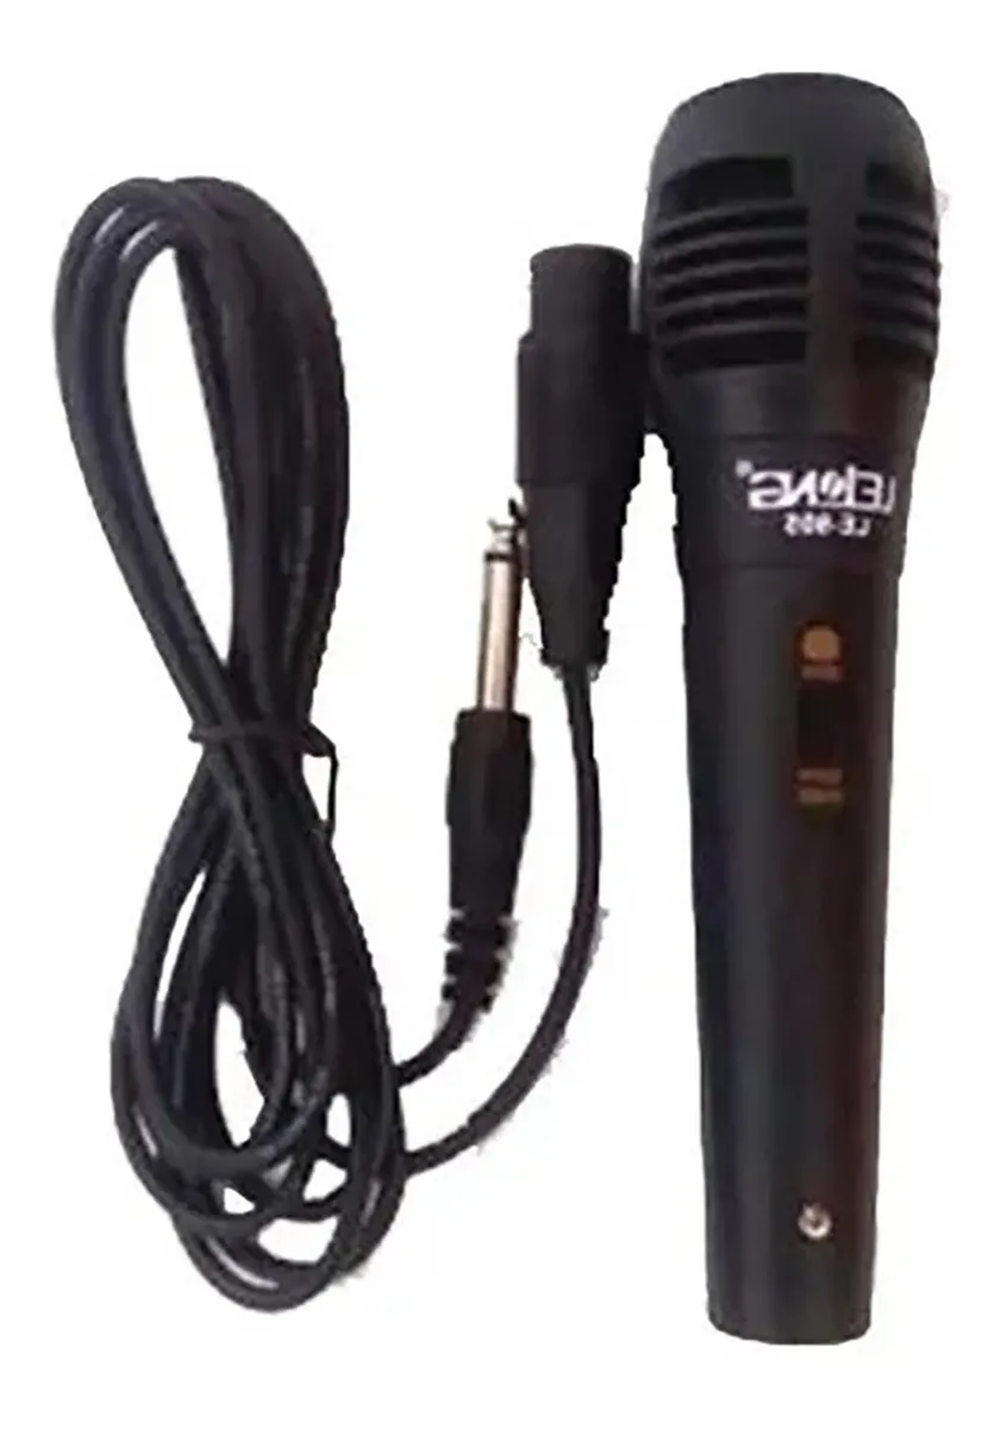 Microfone Profissional Le-905 Cabo P10 De Mão Com Fio 2,5 M - Lelong